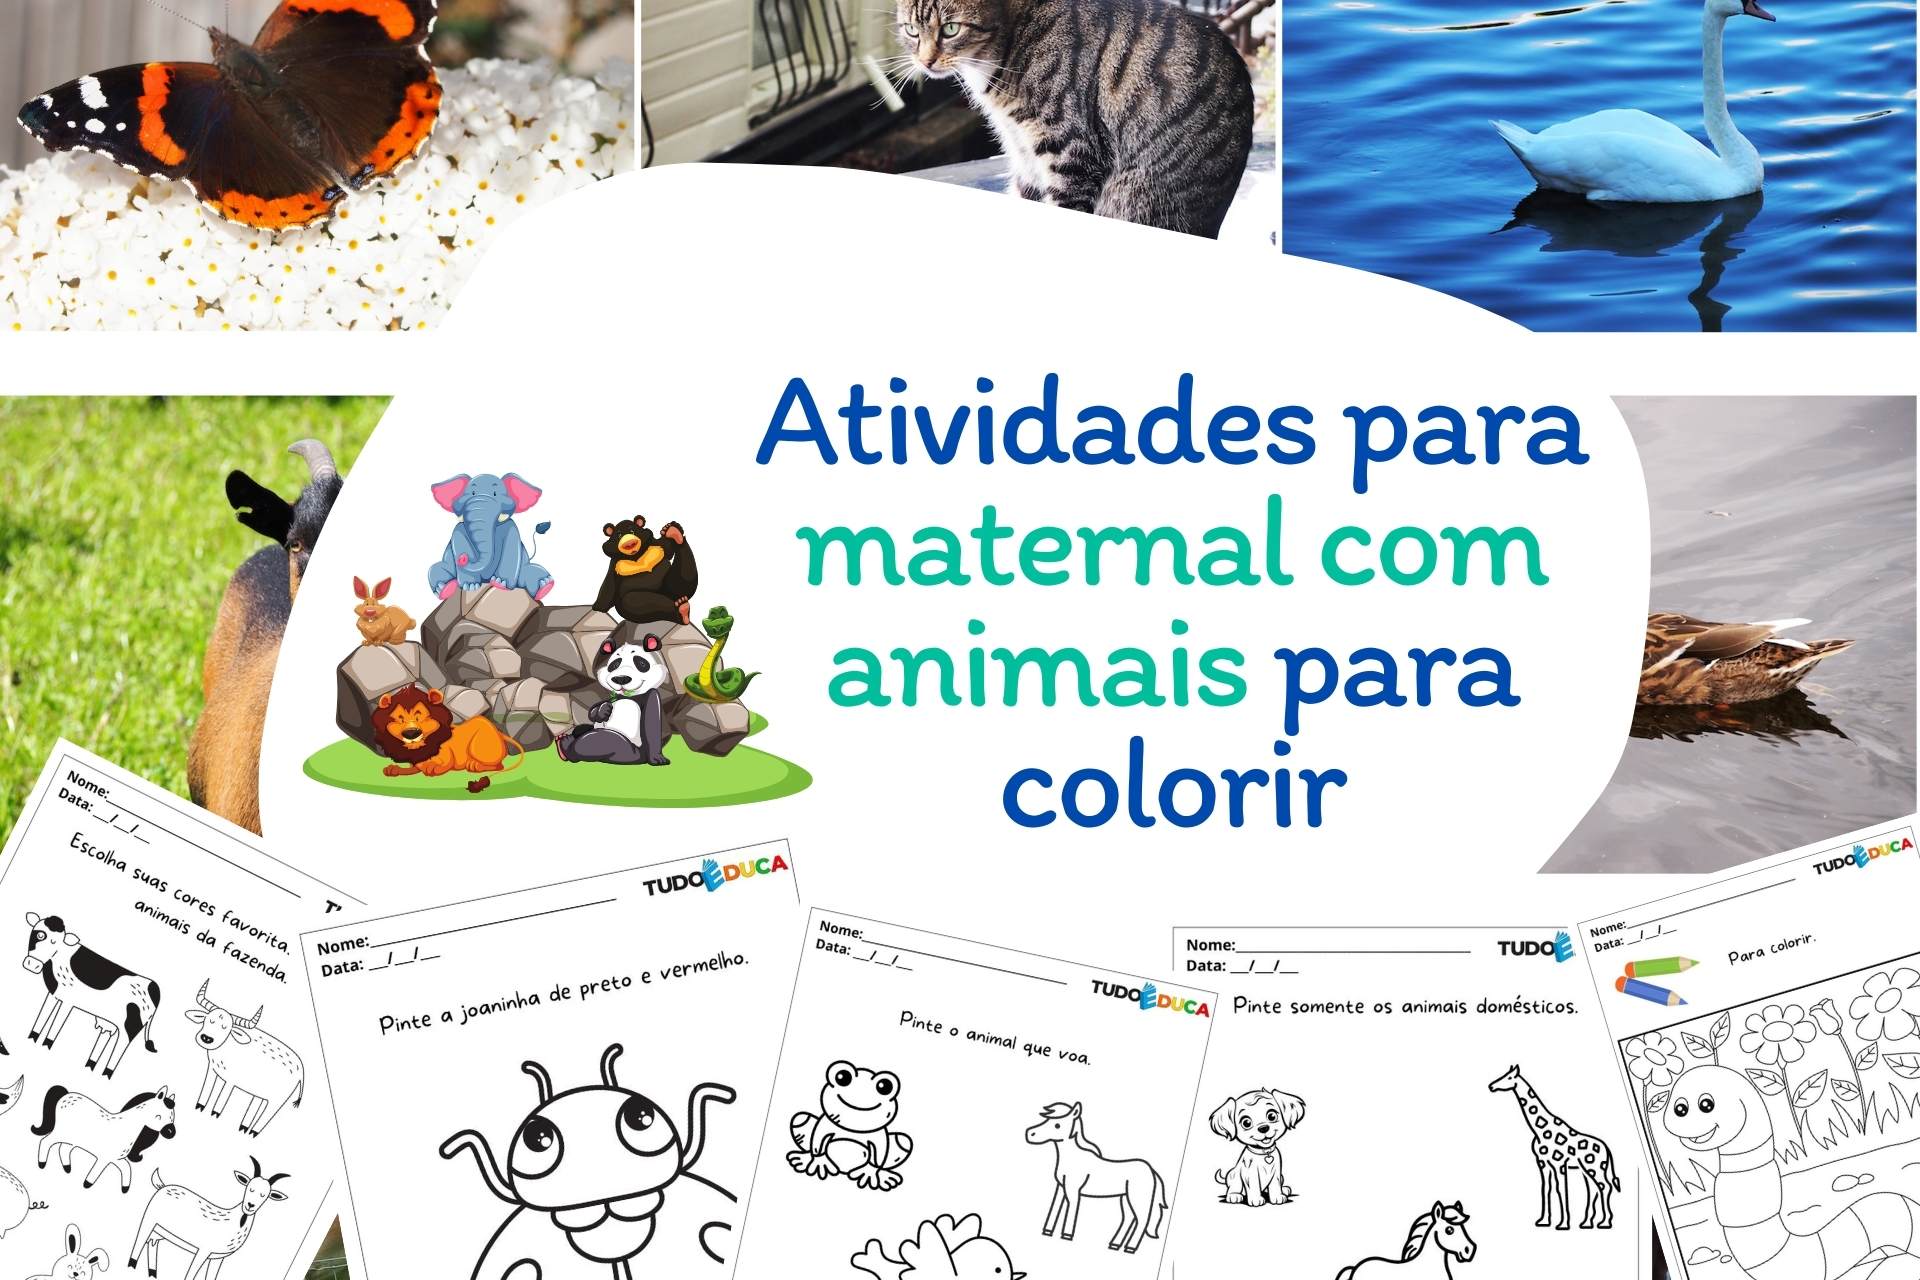 Atividades para maternal com animais para colorir